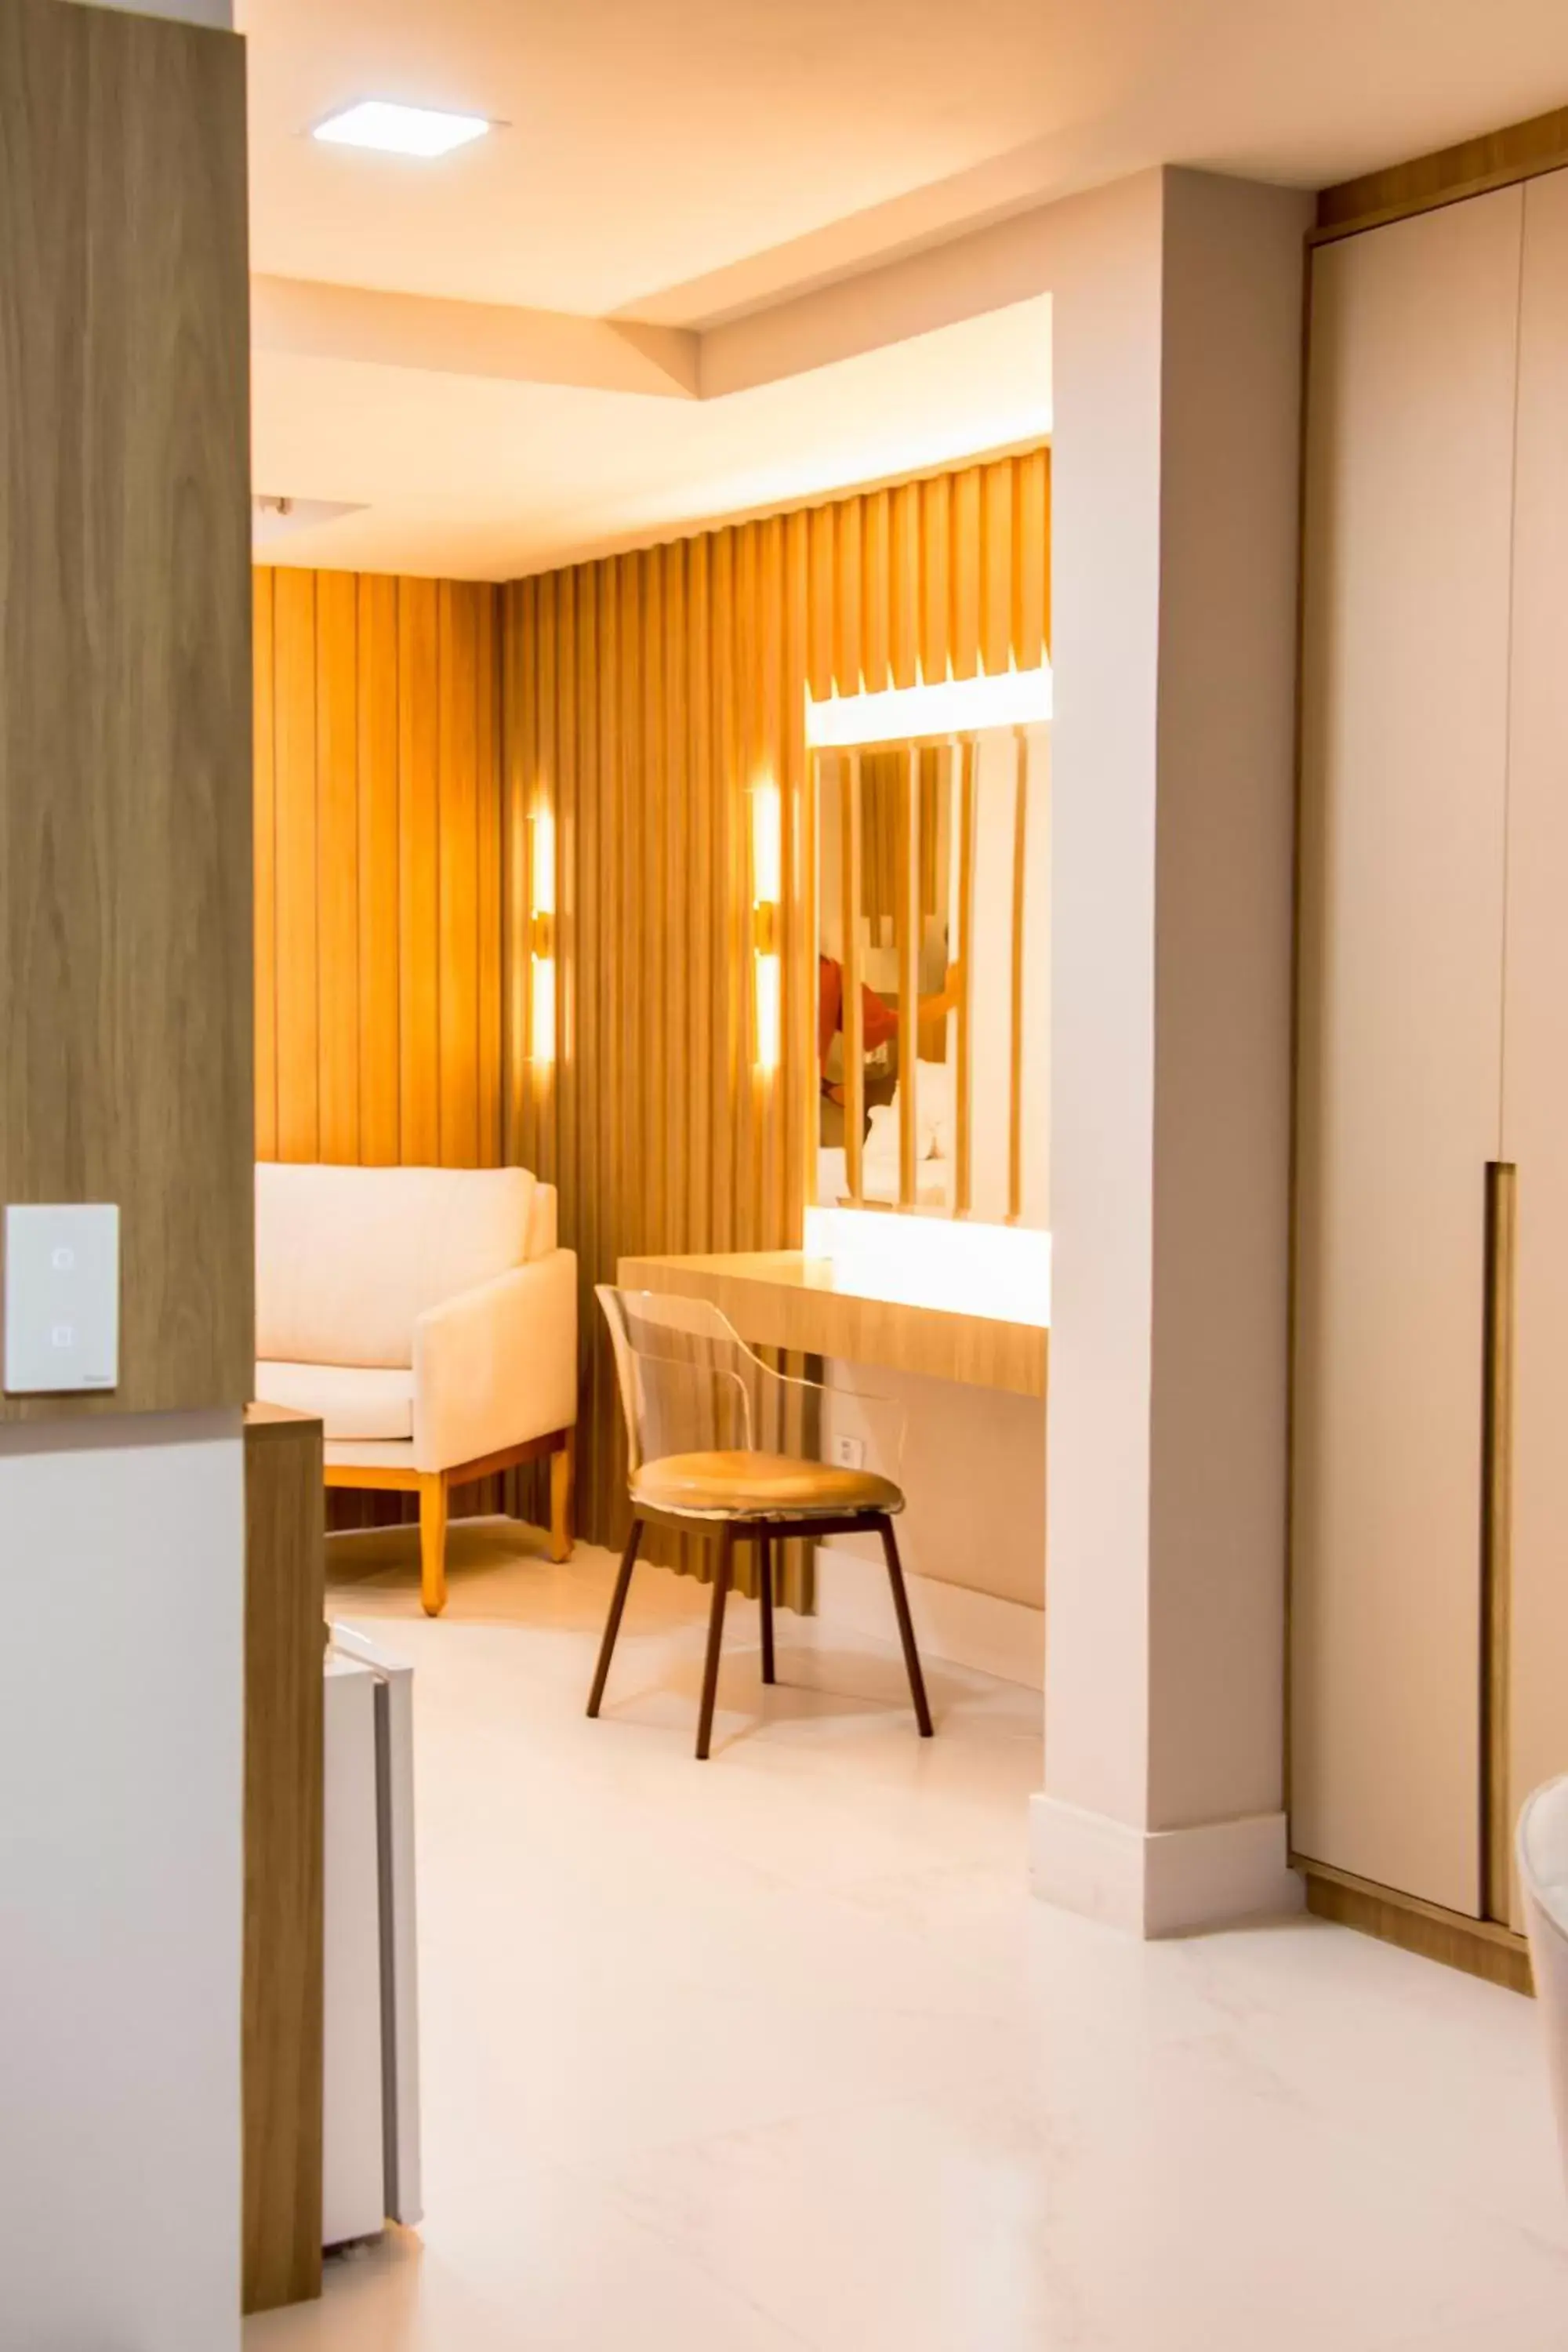 Area and facilities in Ramada Hotel & Suites Campos Pelinca